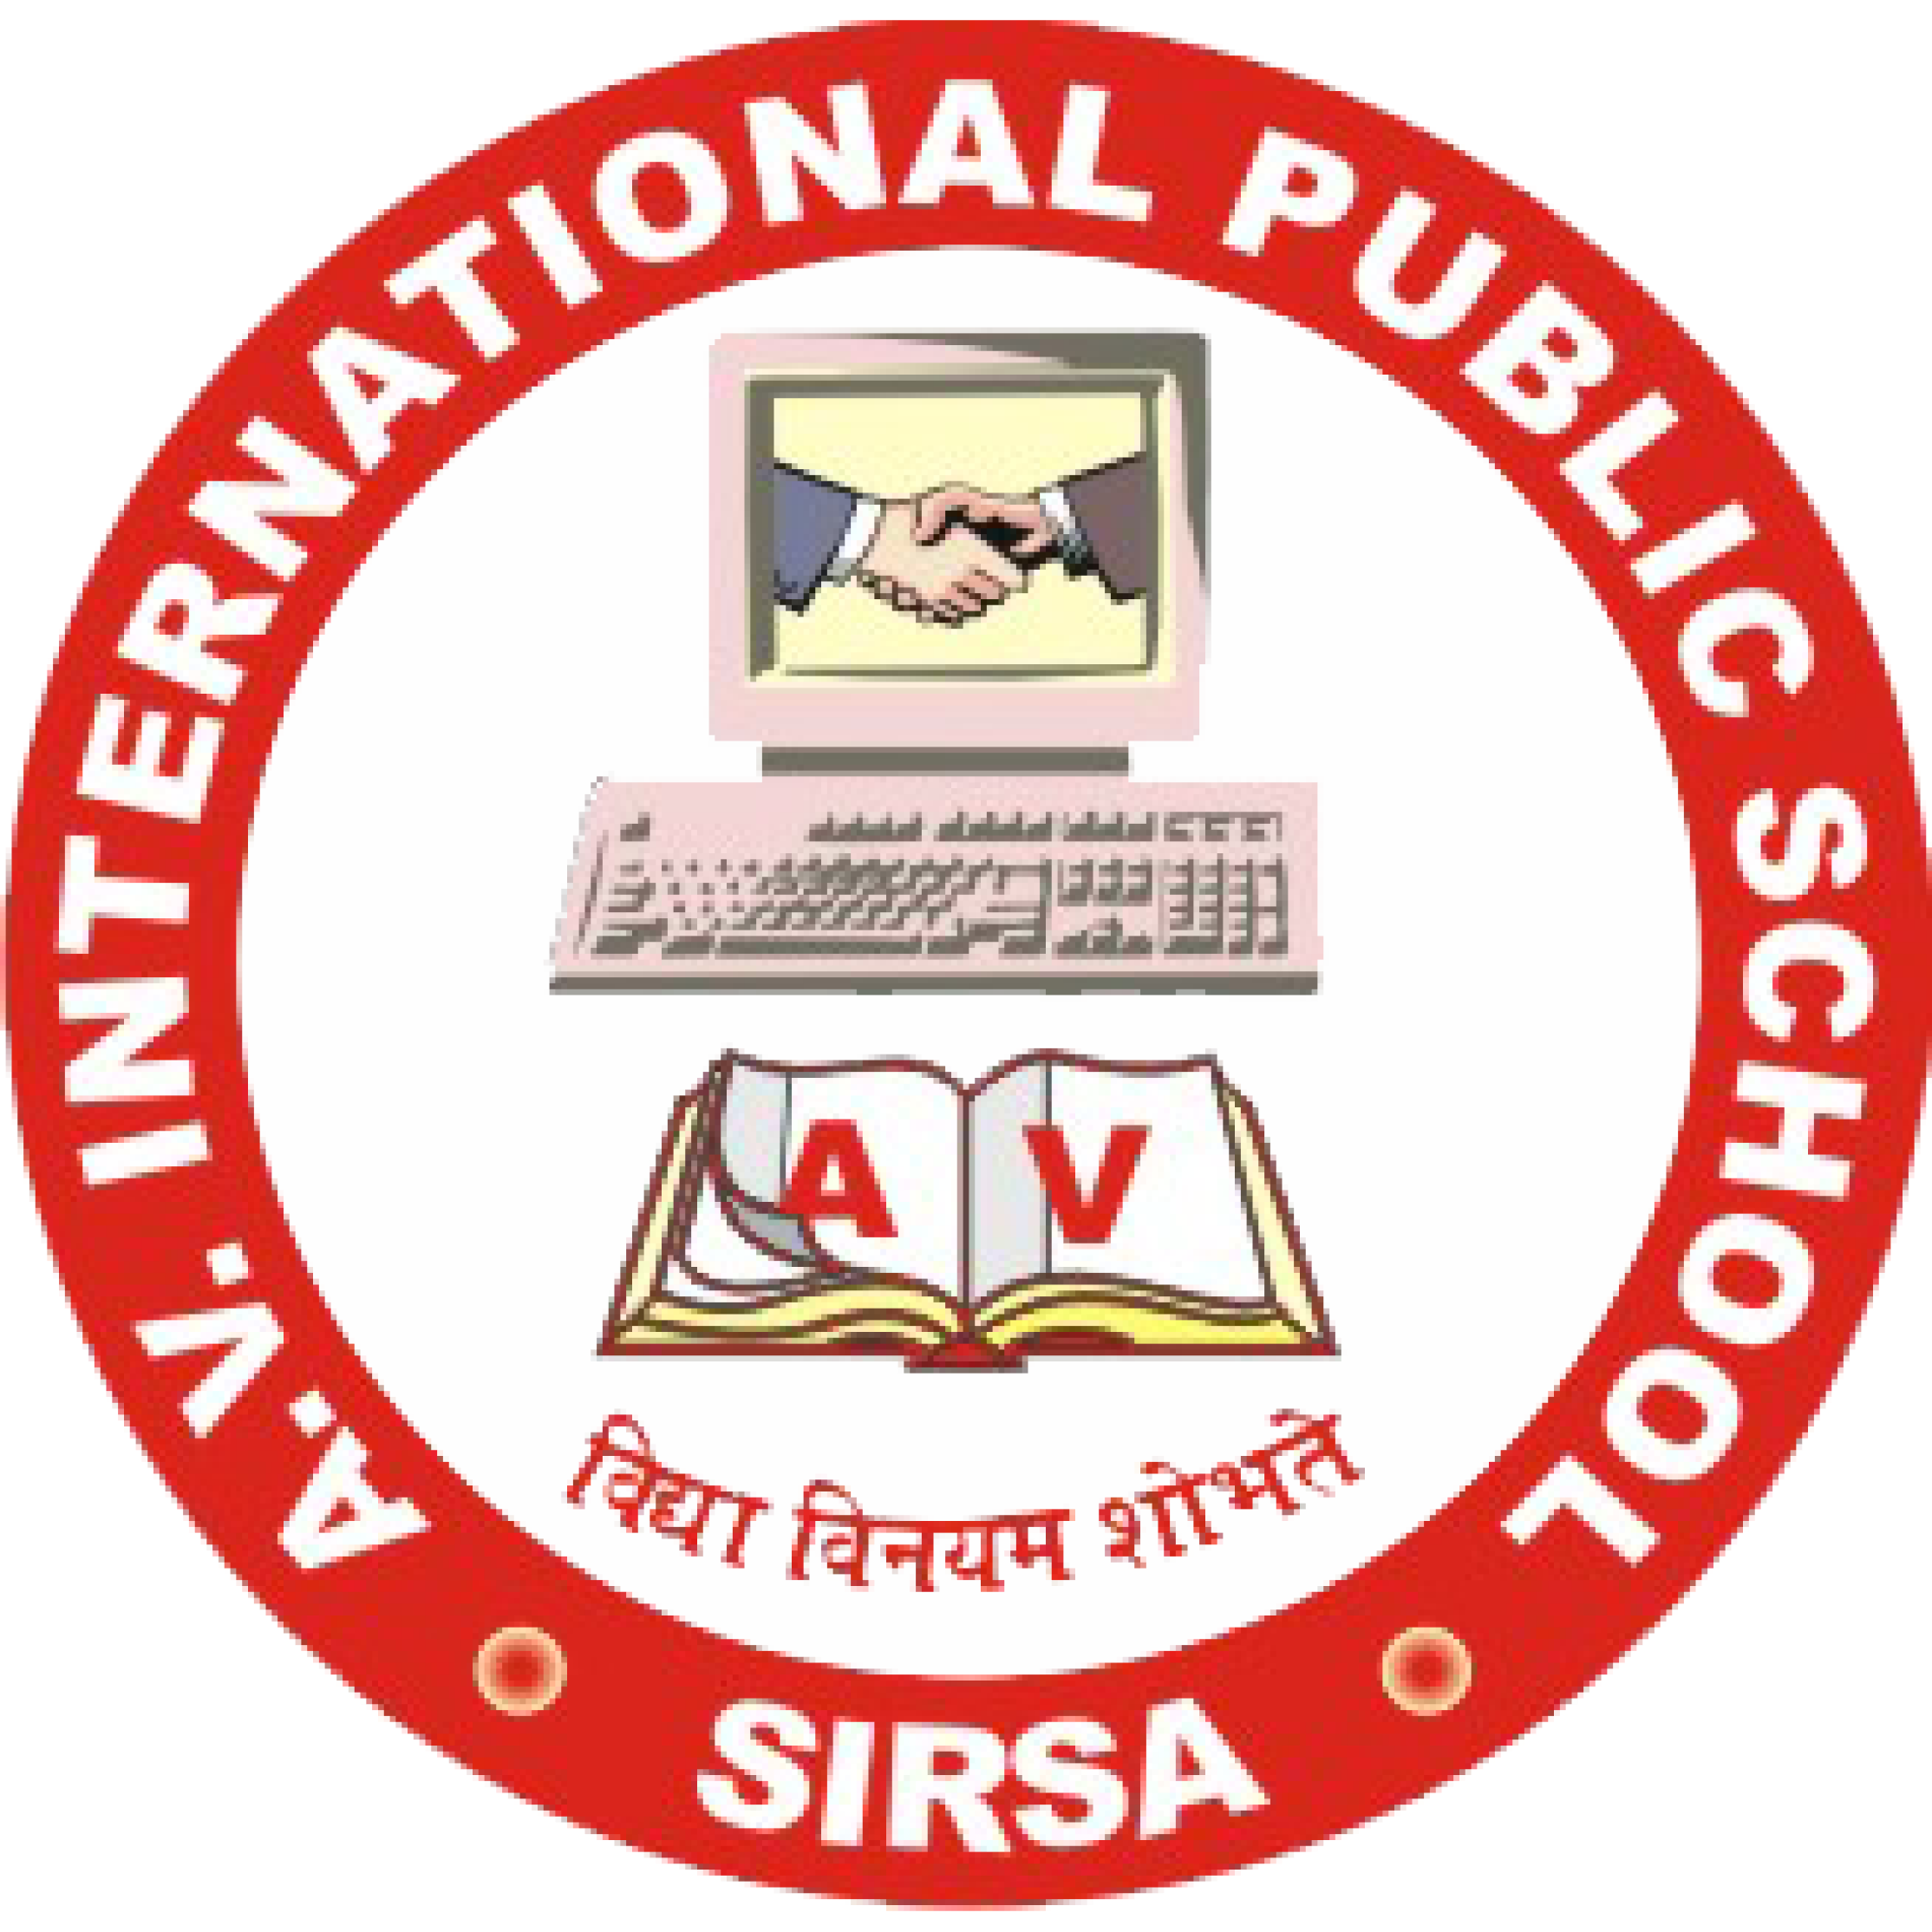 AV INTERNATIONAL PUBLIC SCHOOL